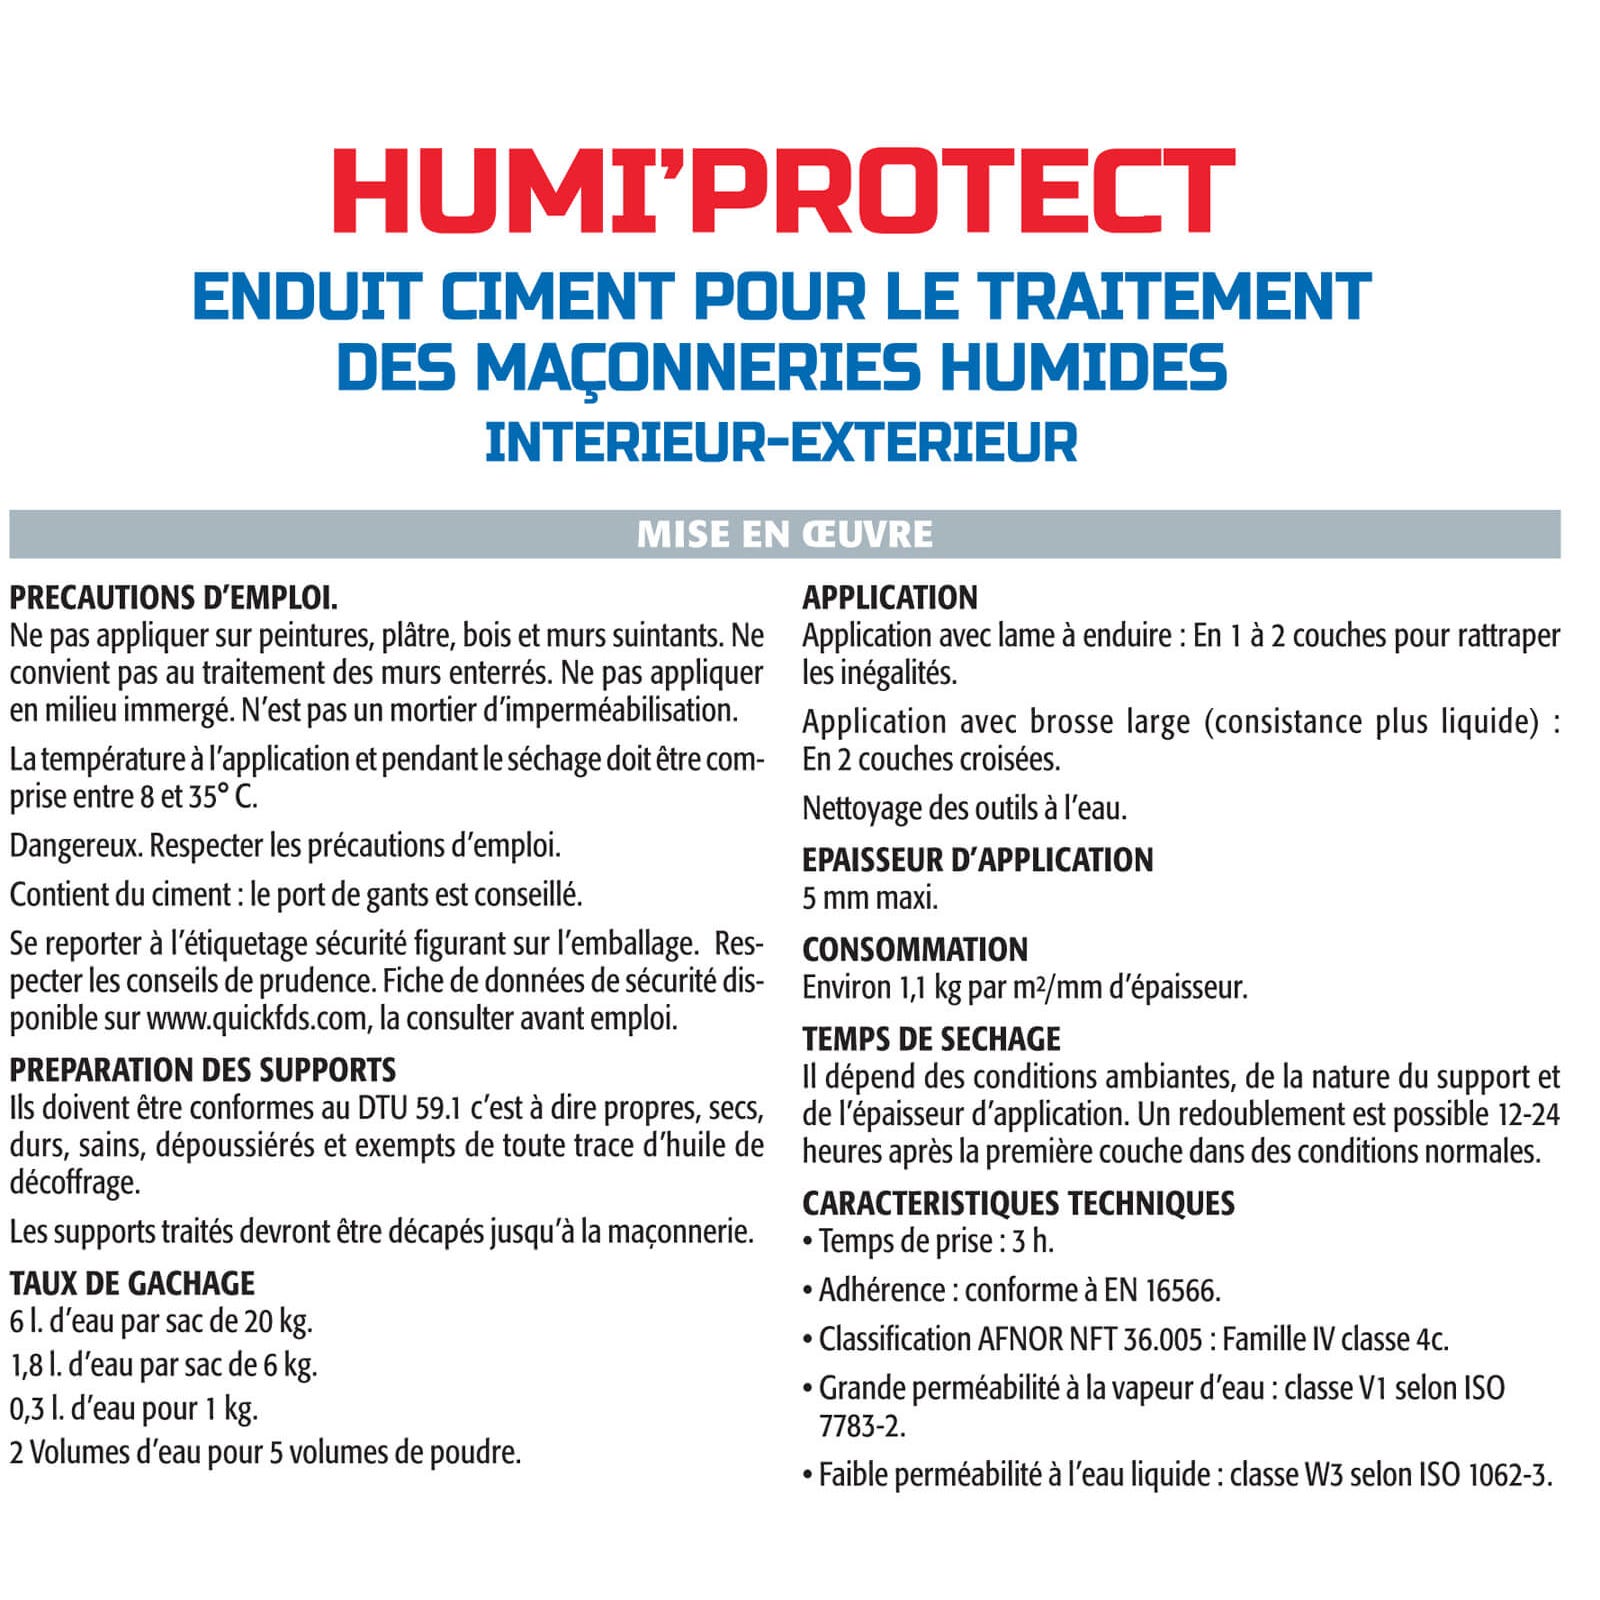 Semin Enduit Spécial Maçonnerie Humides Humi'Protect - Intérieur/Extérieur - Poudre - Sac de 20 kg 3